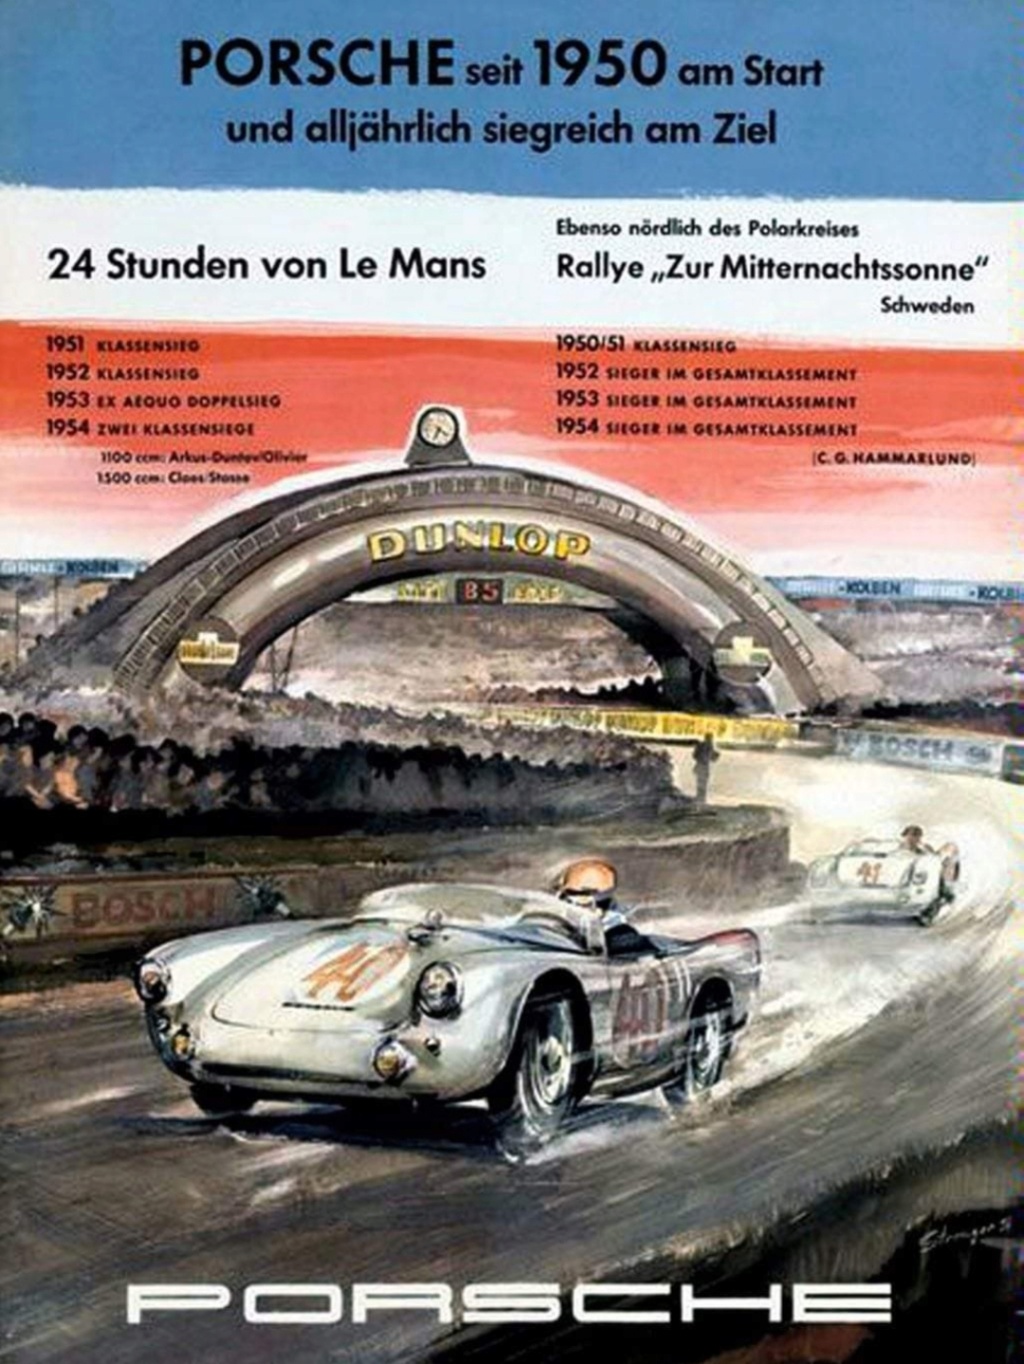 Affiches Porsche dans la course Automobile - Page 2 Img_2189